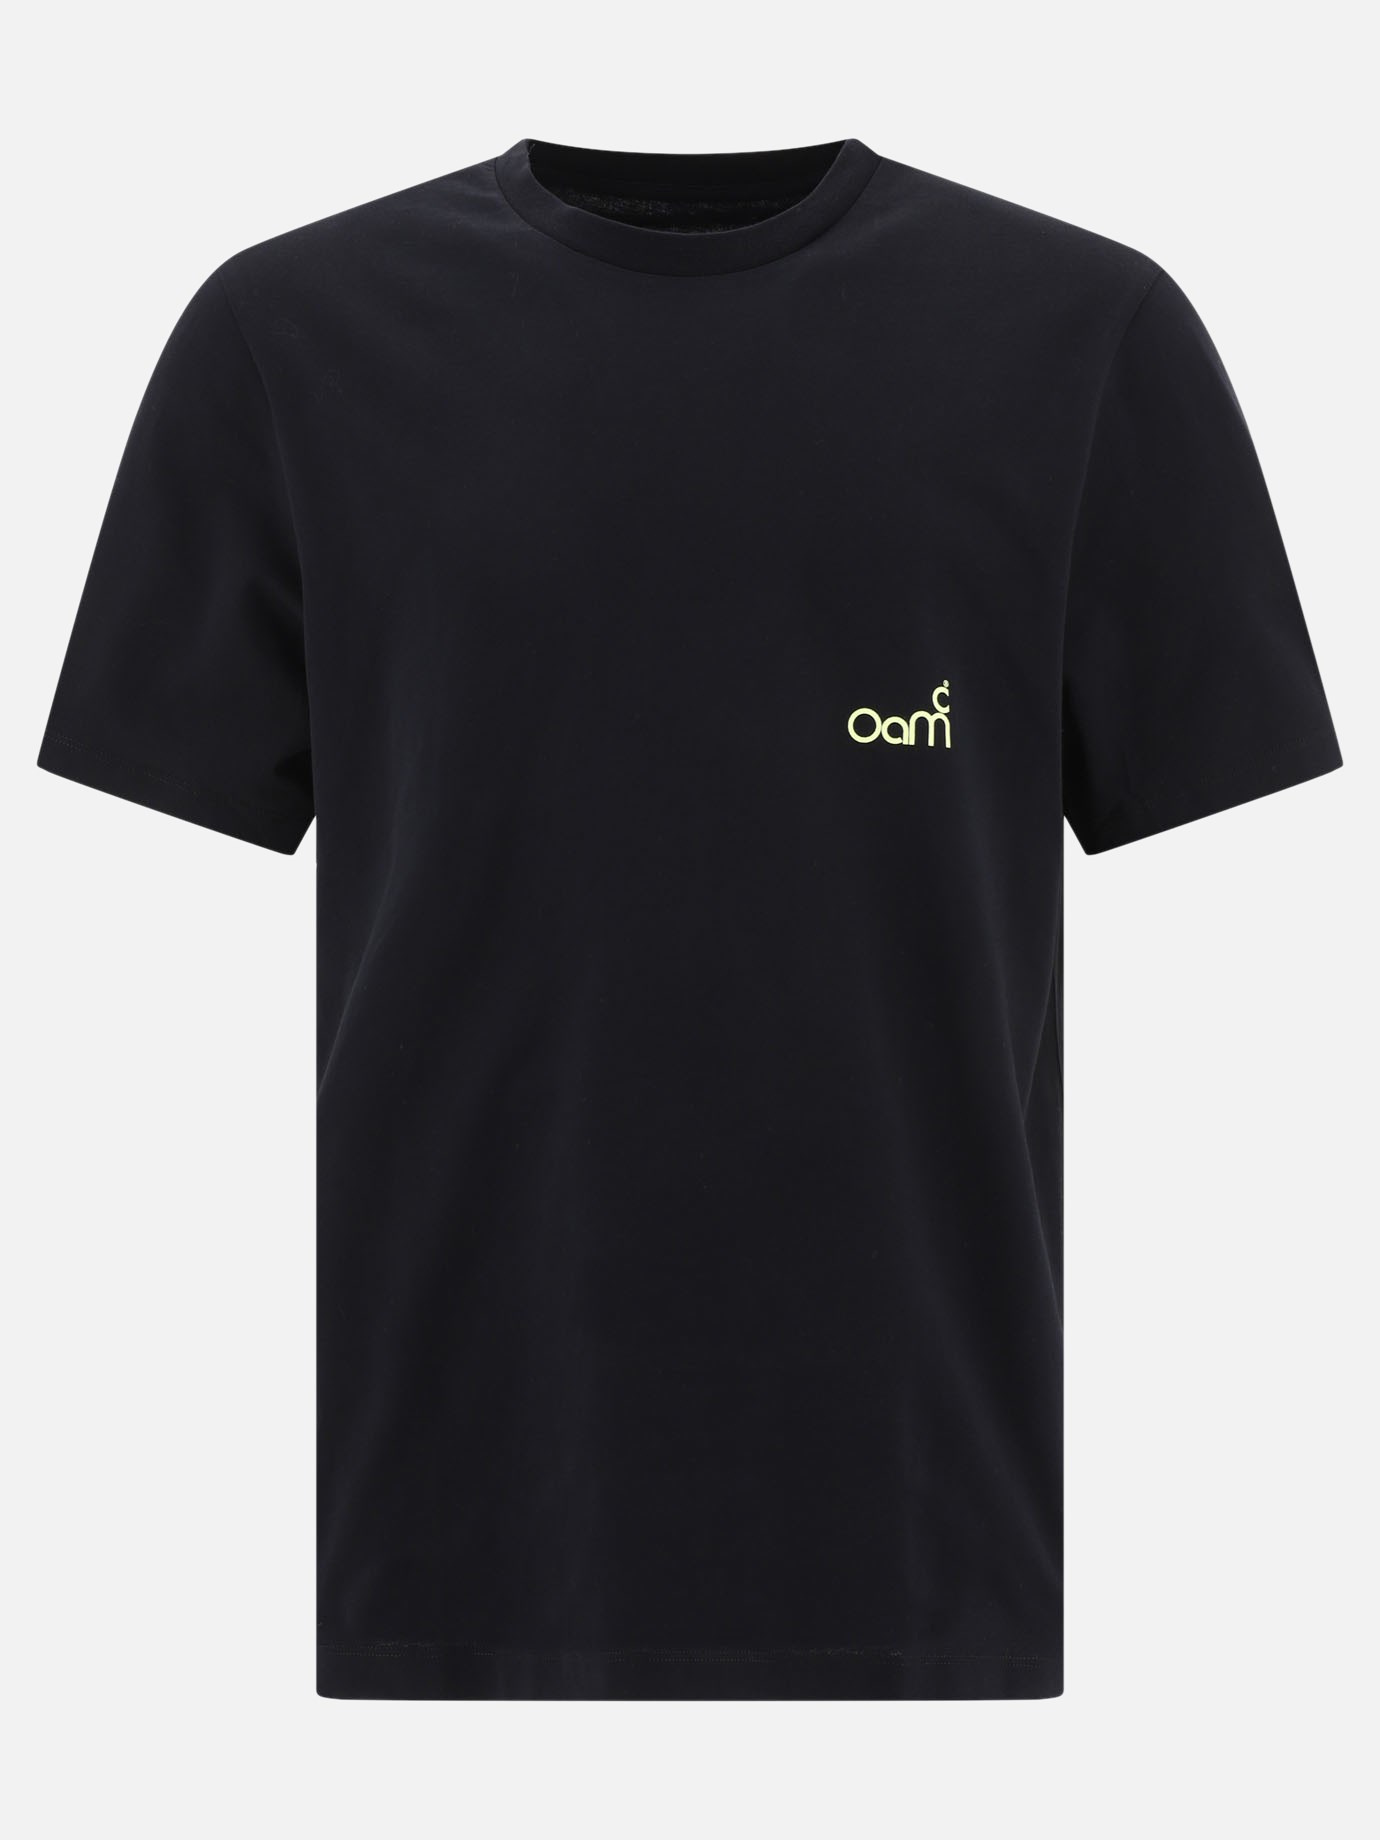  Oay  t-shirtby OAMC - 2